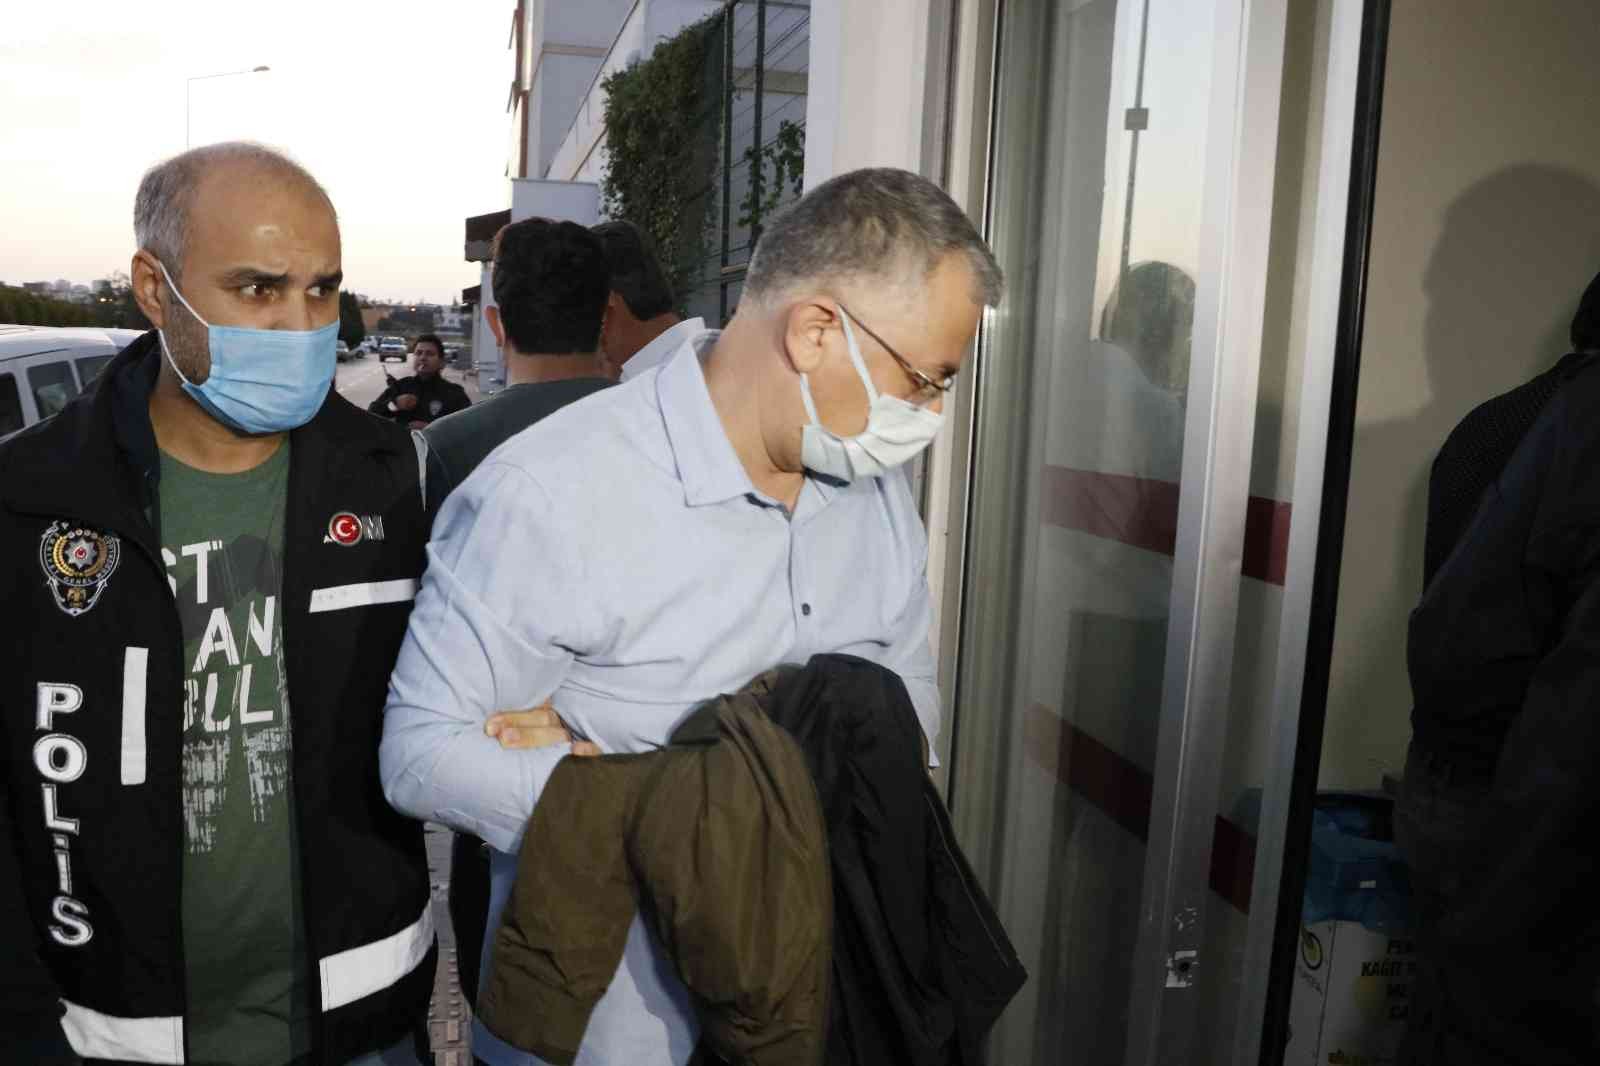 Adana’da ihaleye fesat operasyonu: 200 gözaltı #adana